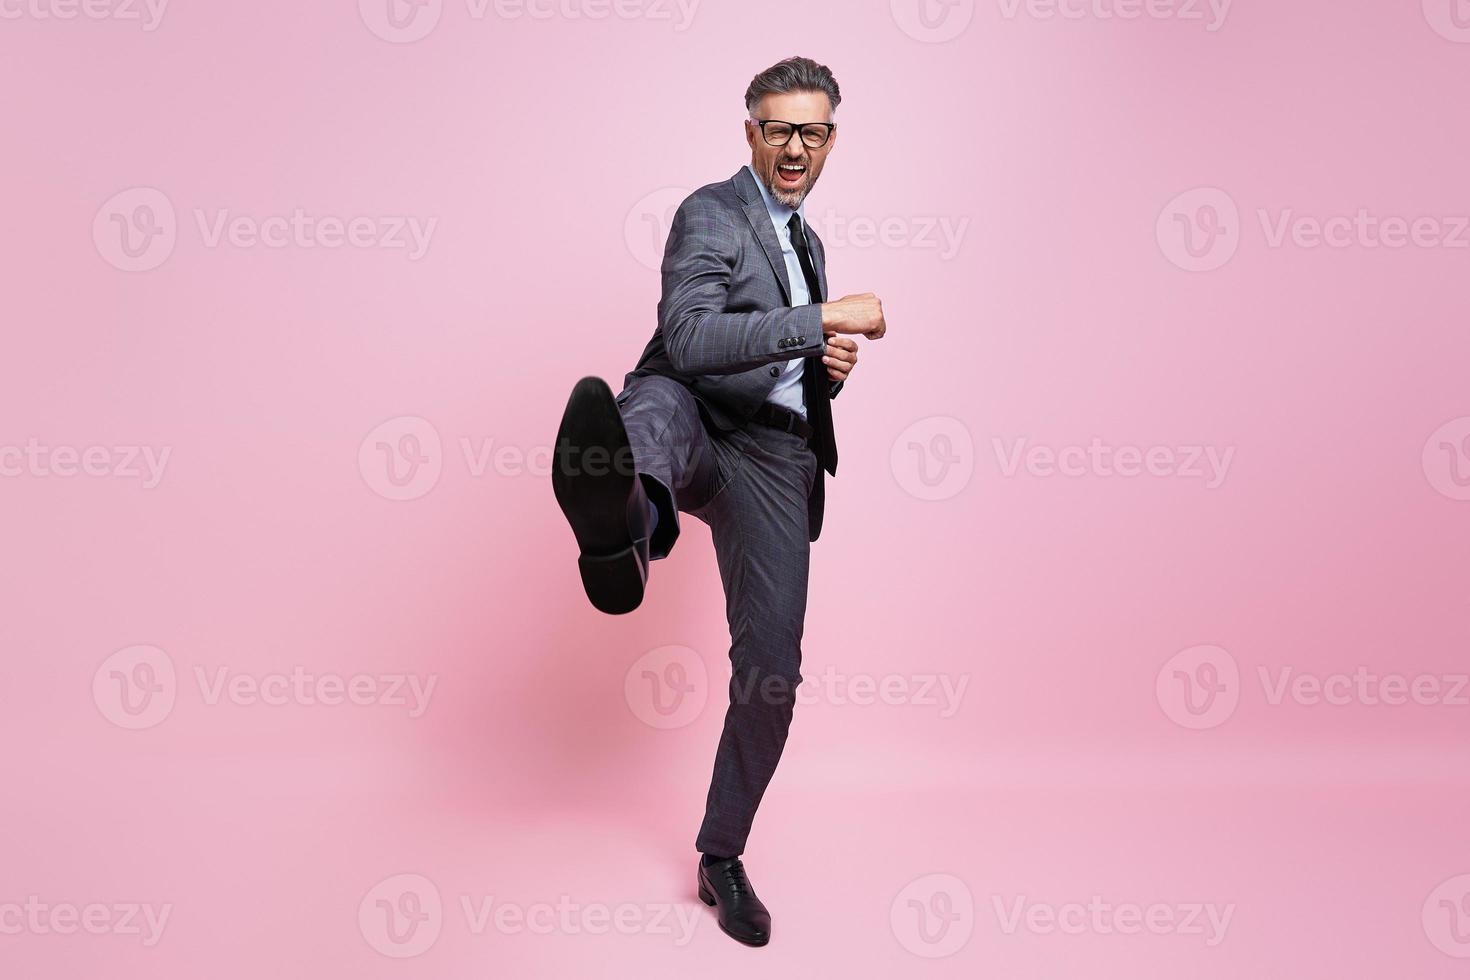 furioso hombre maduro con ropa formal lanzando una patada en la pierna mientras se enfrenta a un fondo rosa foto